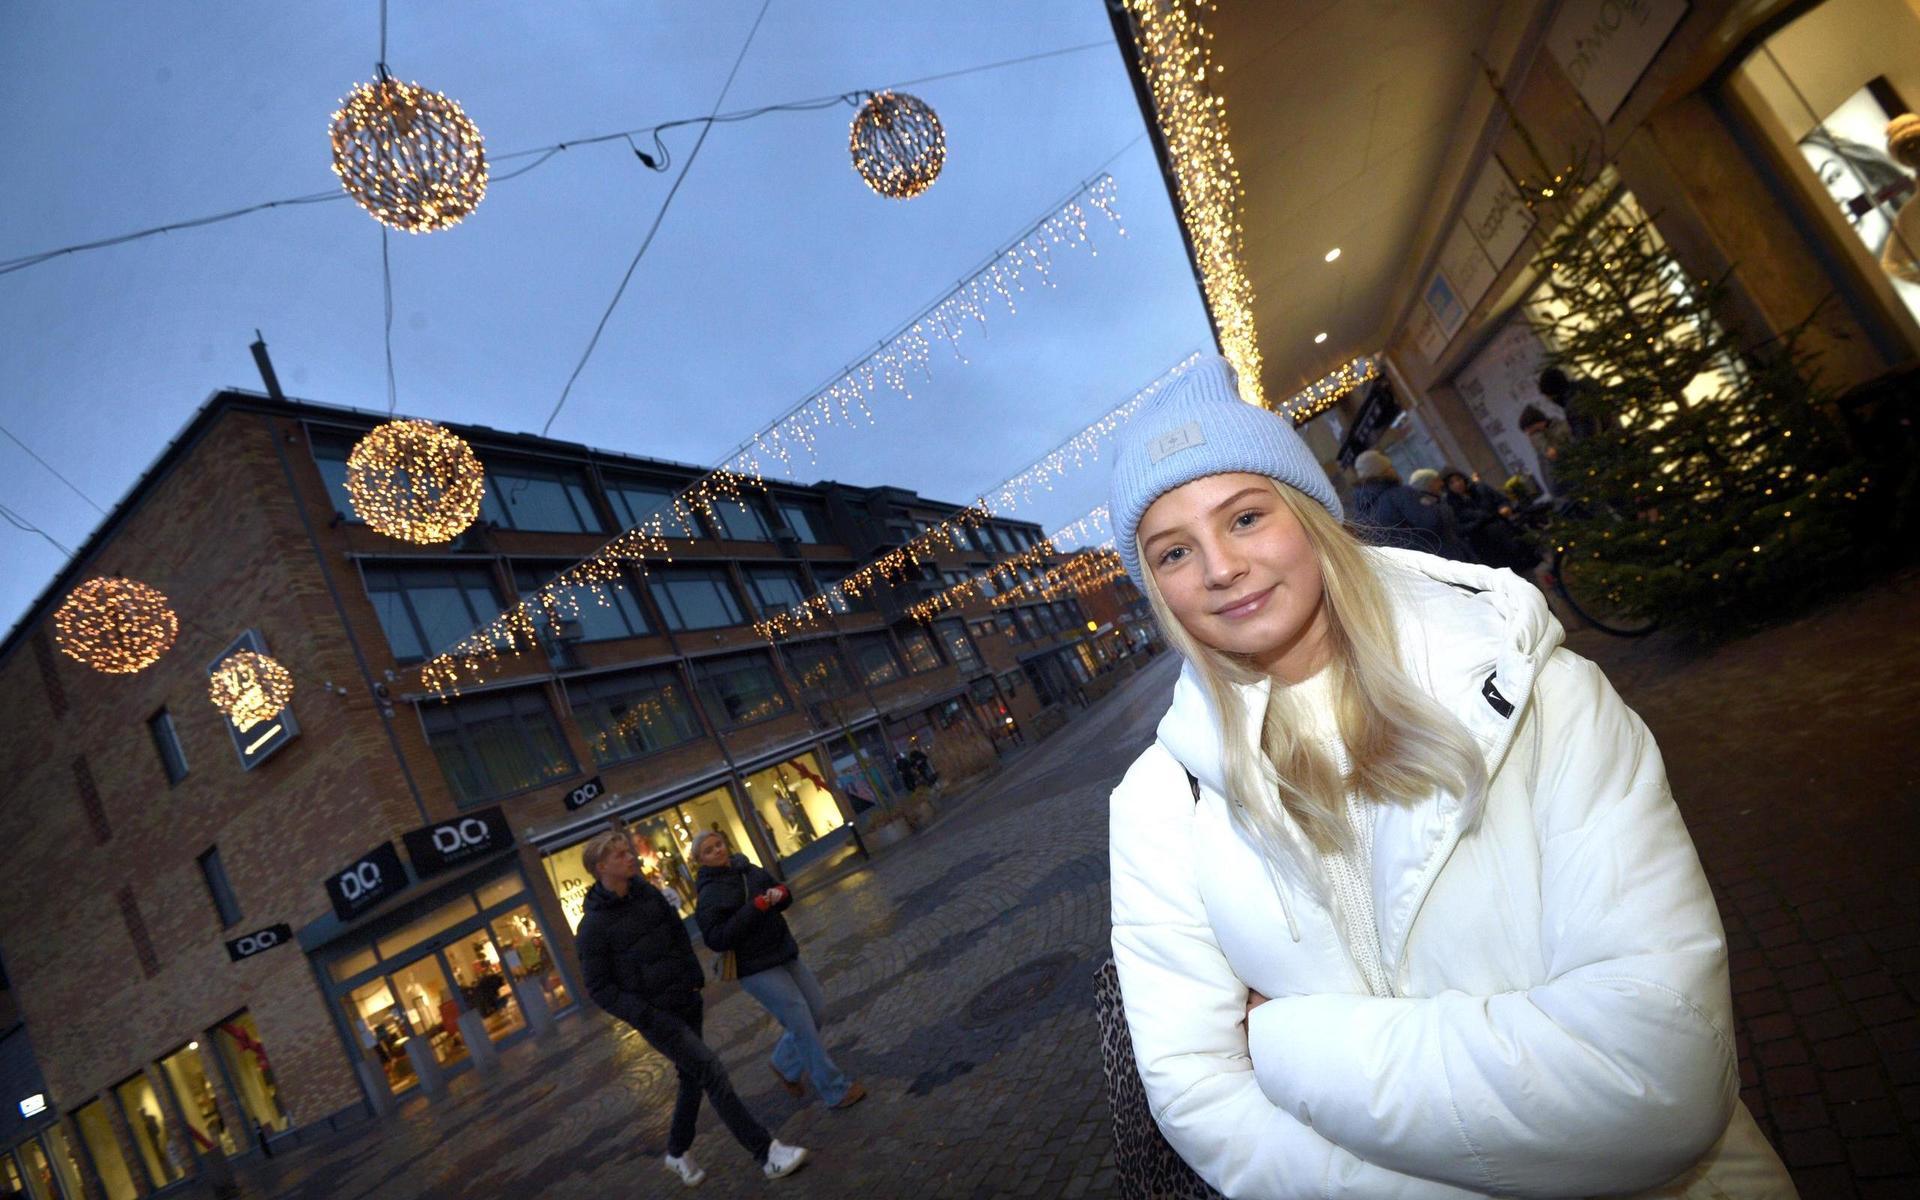 Meja Schultz var i Gallerian under lördagen tillsammans med sin mamma Anna-Lena Svensson för att byta en julklapp. 